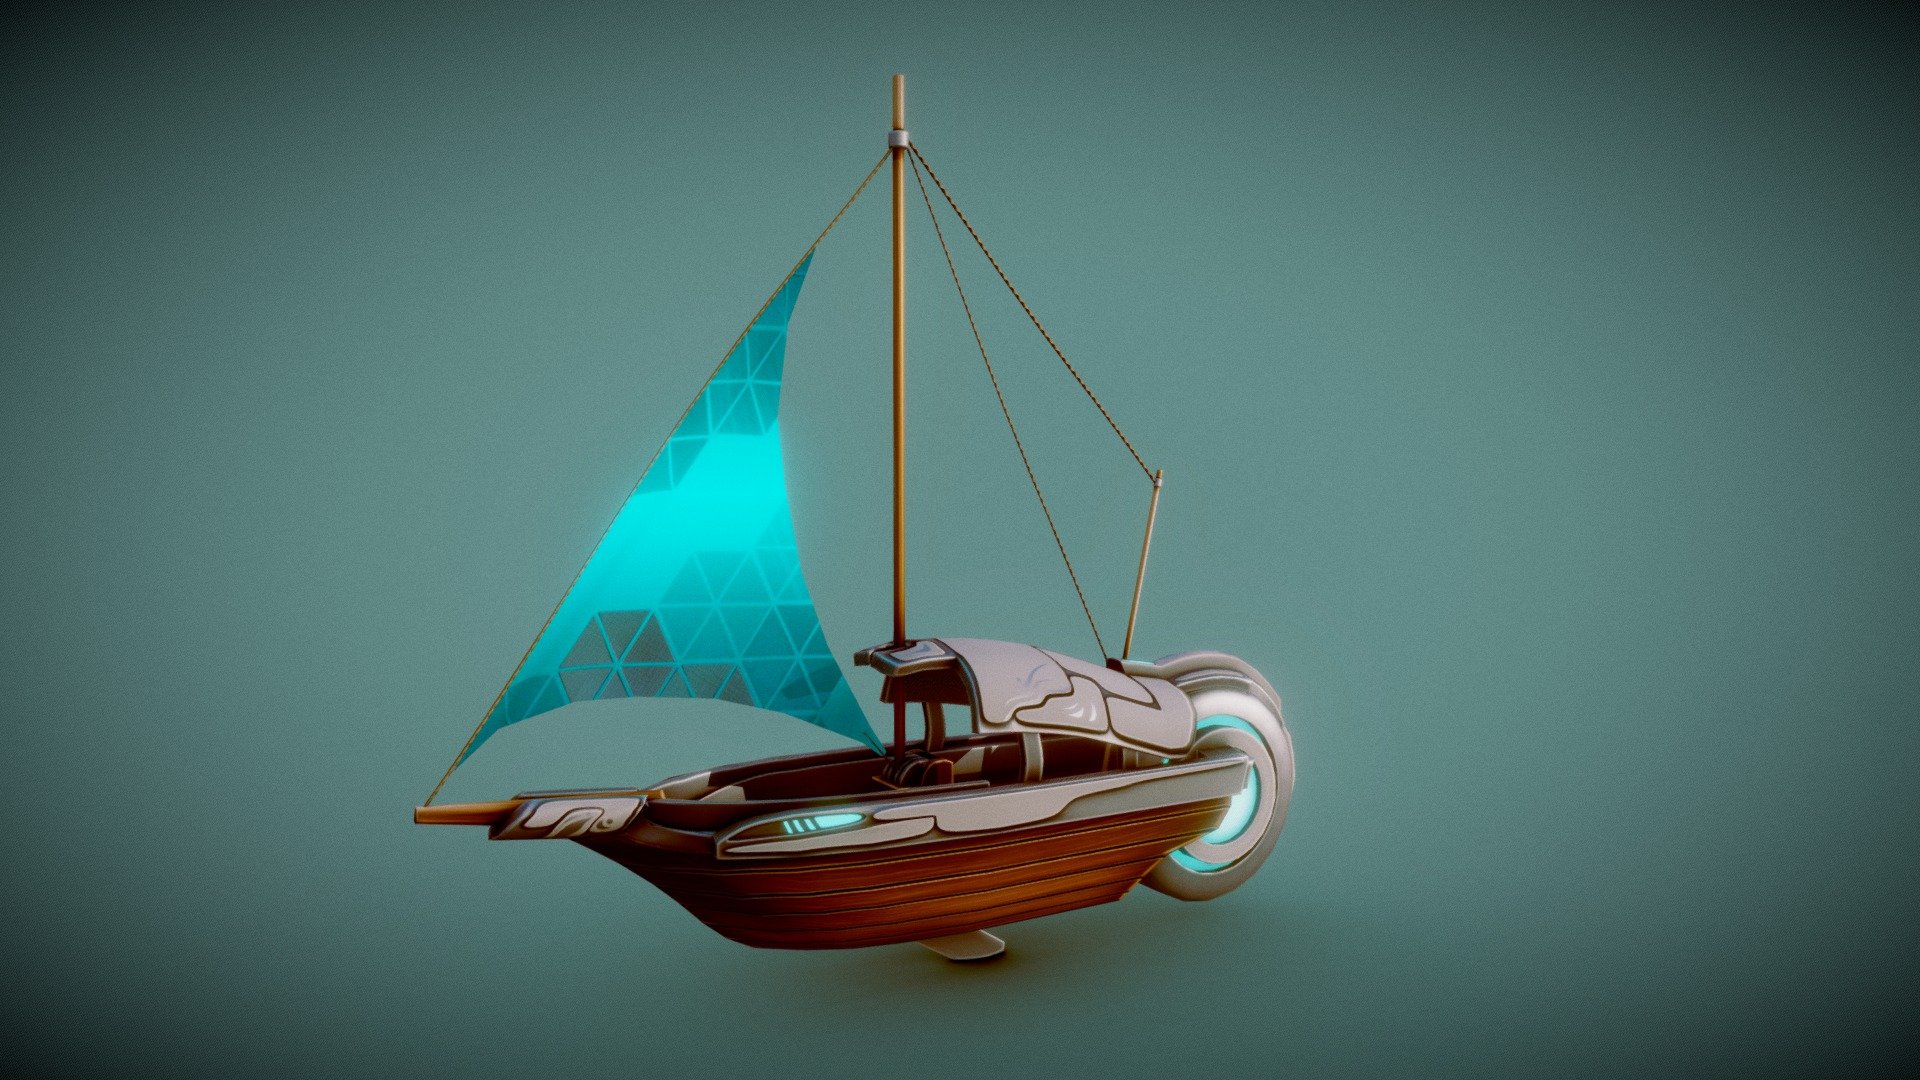 Sci-fi Boat - 3D model by Mapachin (@Mapachin93) 3d model